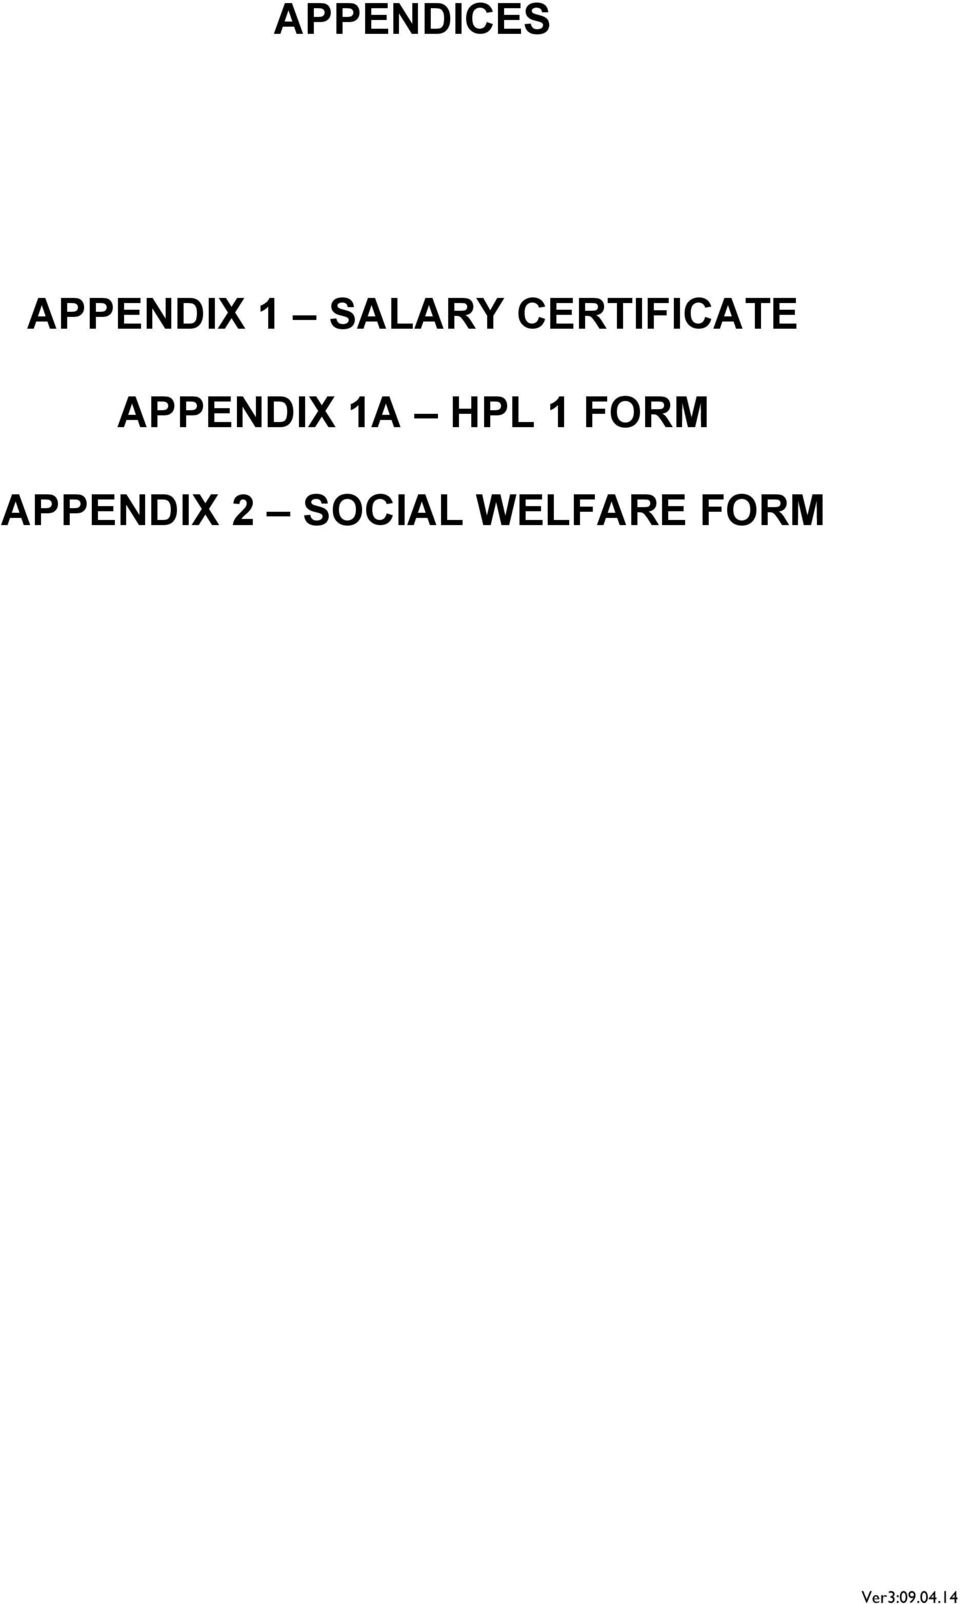 APPENDIX 1A HPL 1 FORM